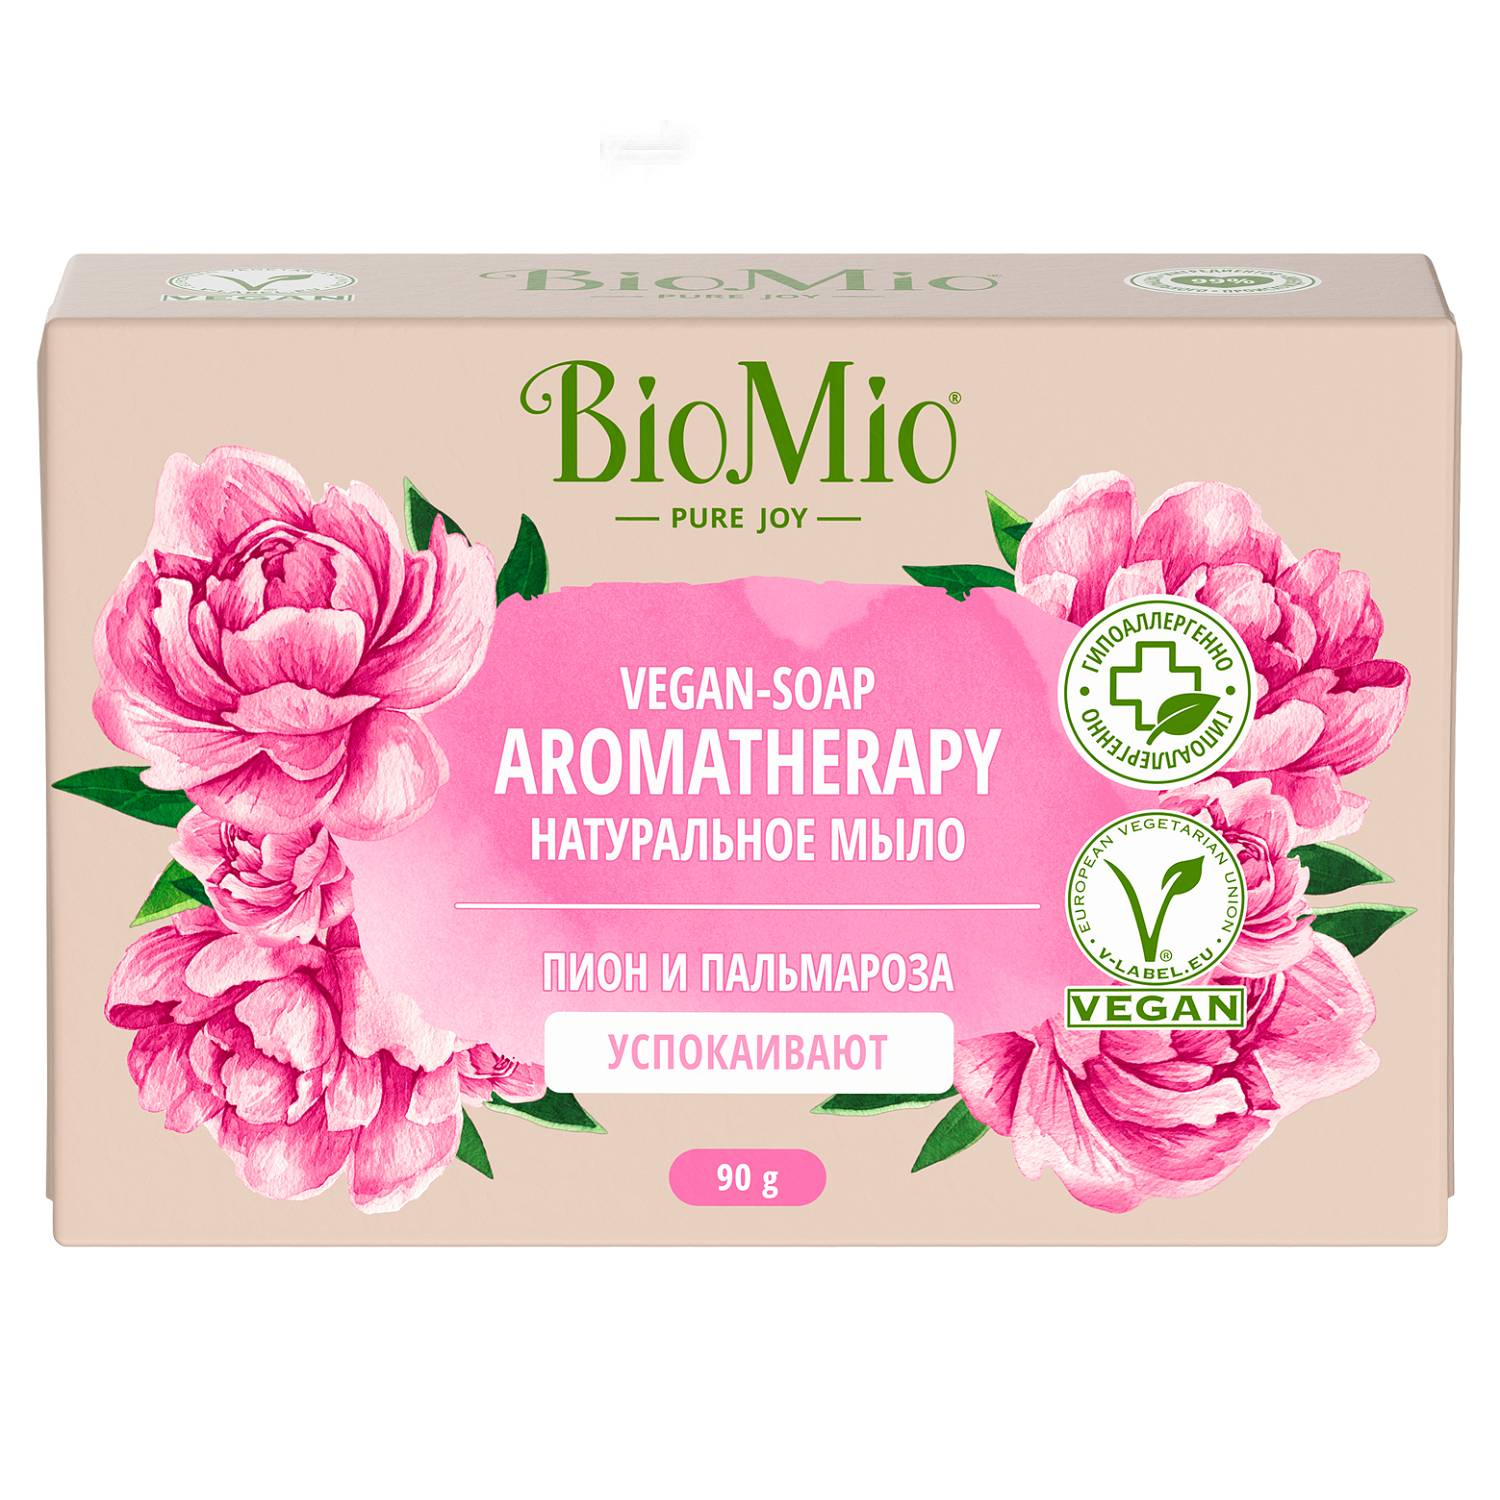 цена BioMio Натуральное мыло Пион и пальмароза Vegan Soap Aromatherapy, 90 г (BioMio, Мыло)